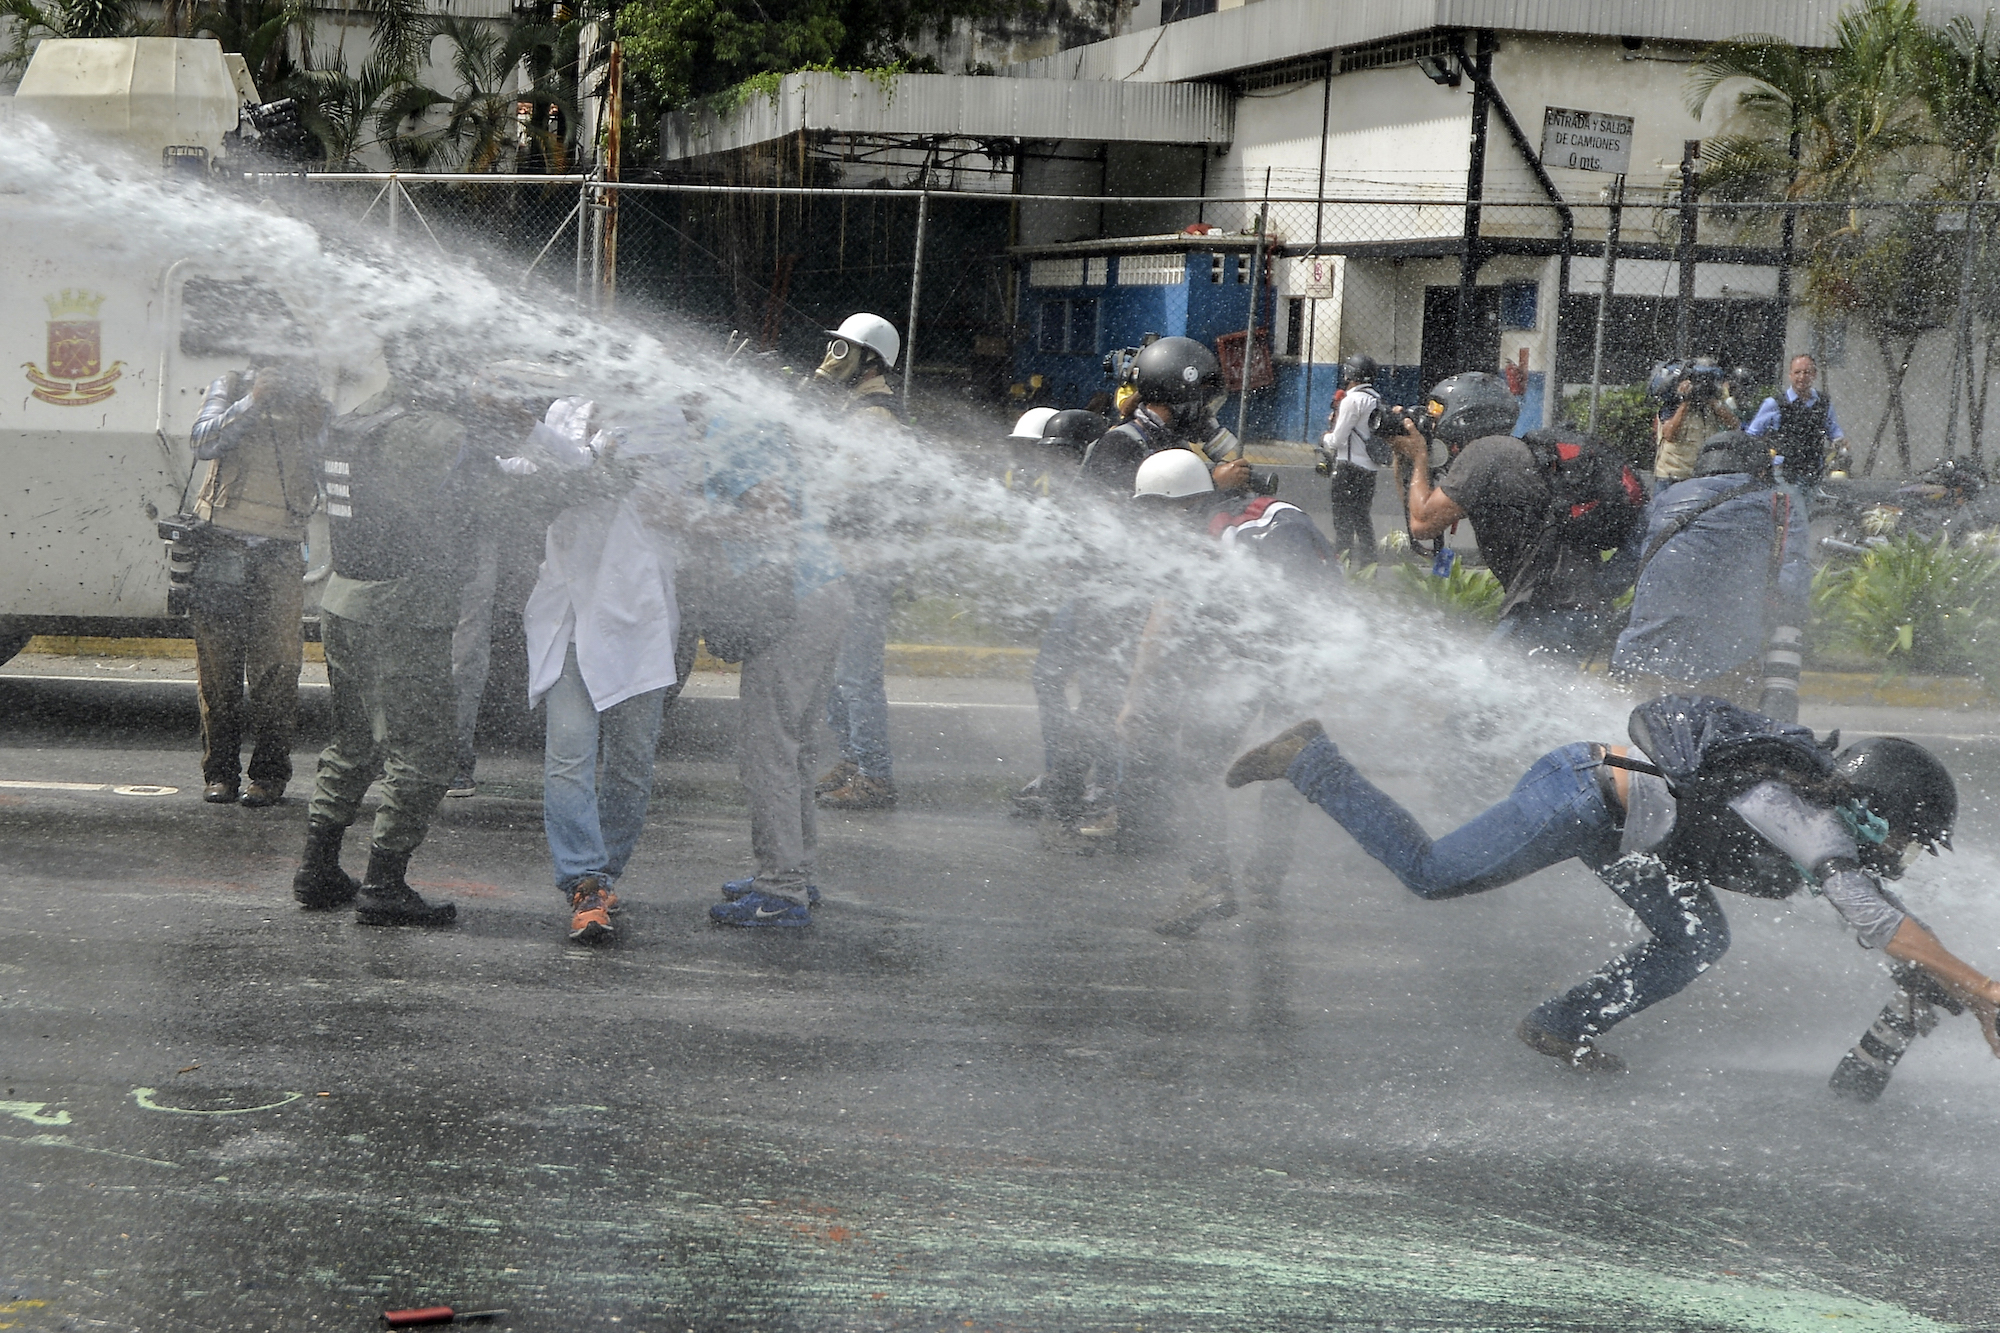 La photographe de AP Ariana Cubillos est attaquée par un canon à eau pendant une manifestation à Caracas, le 22 mai 2017. LUIS ROBAYO / AFP